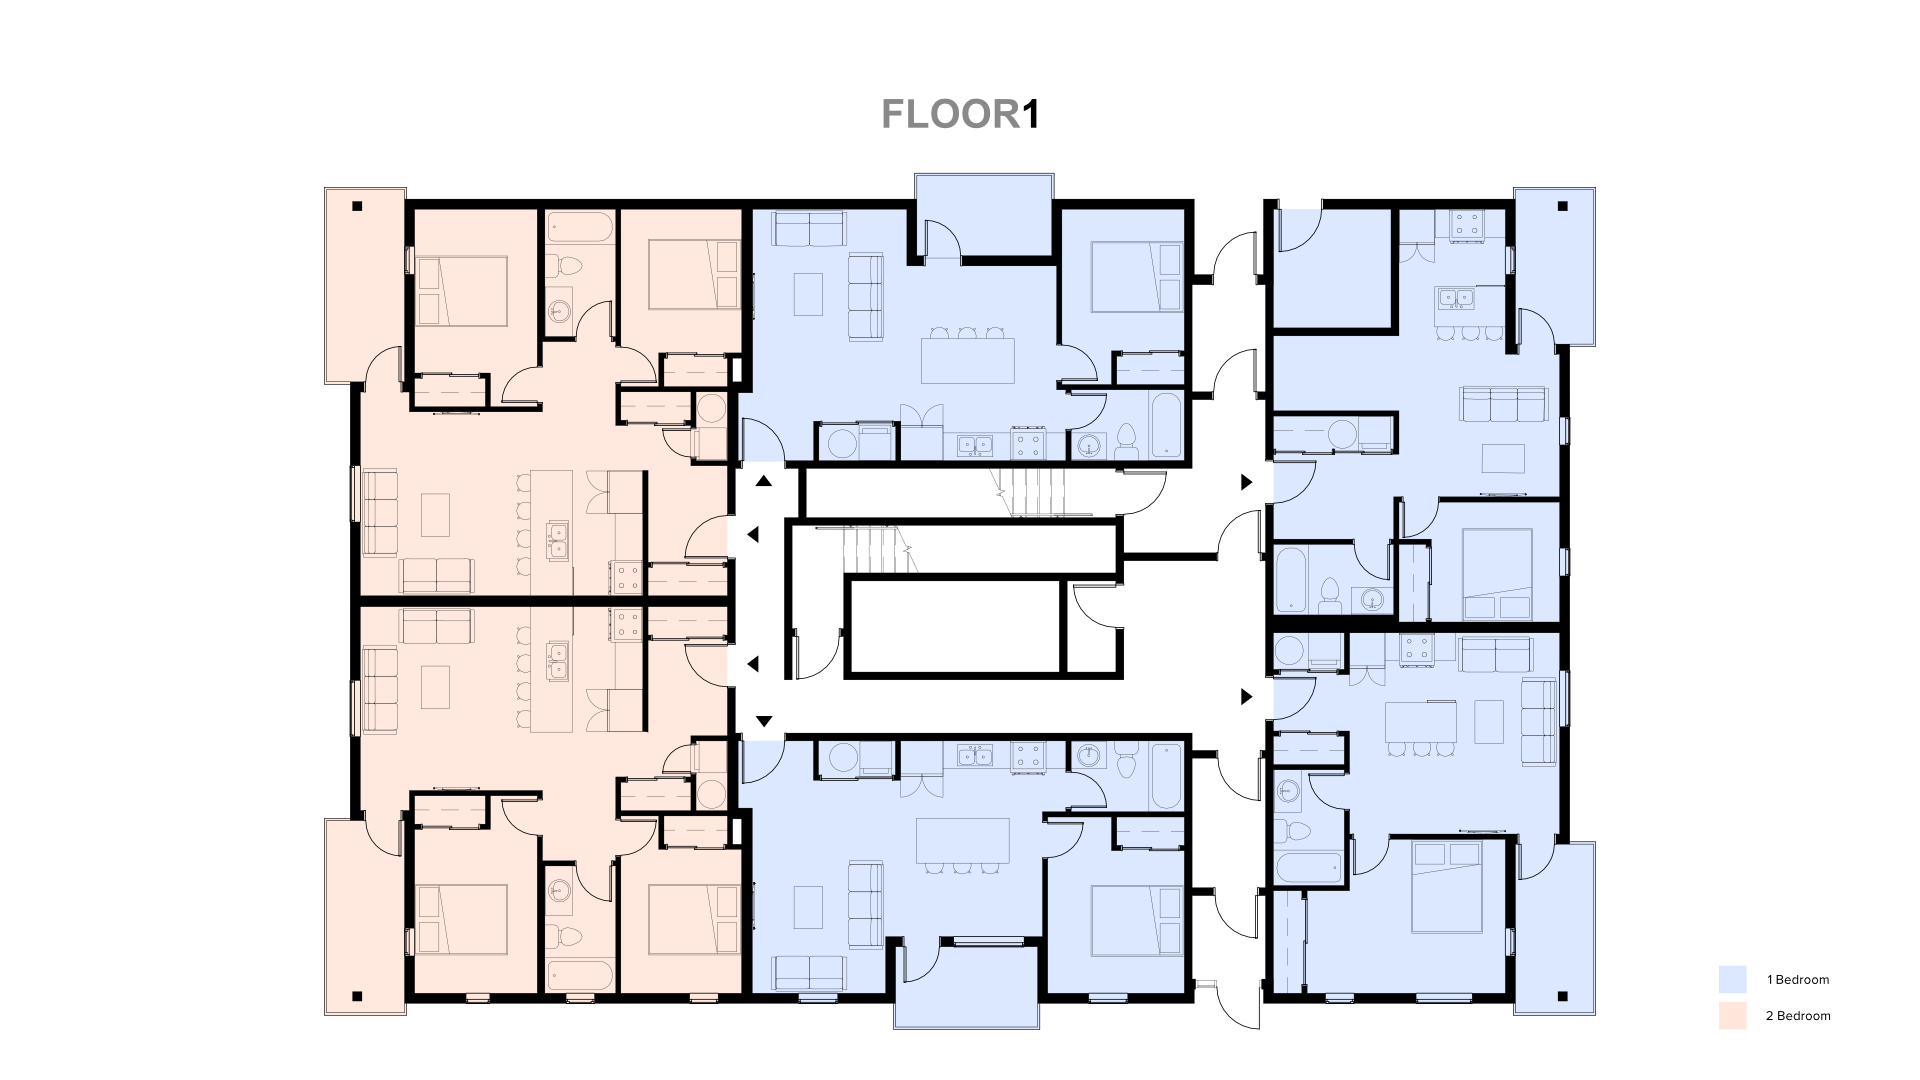 Floor 1 Plan.png